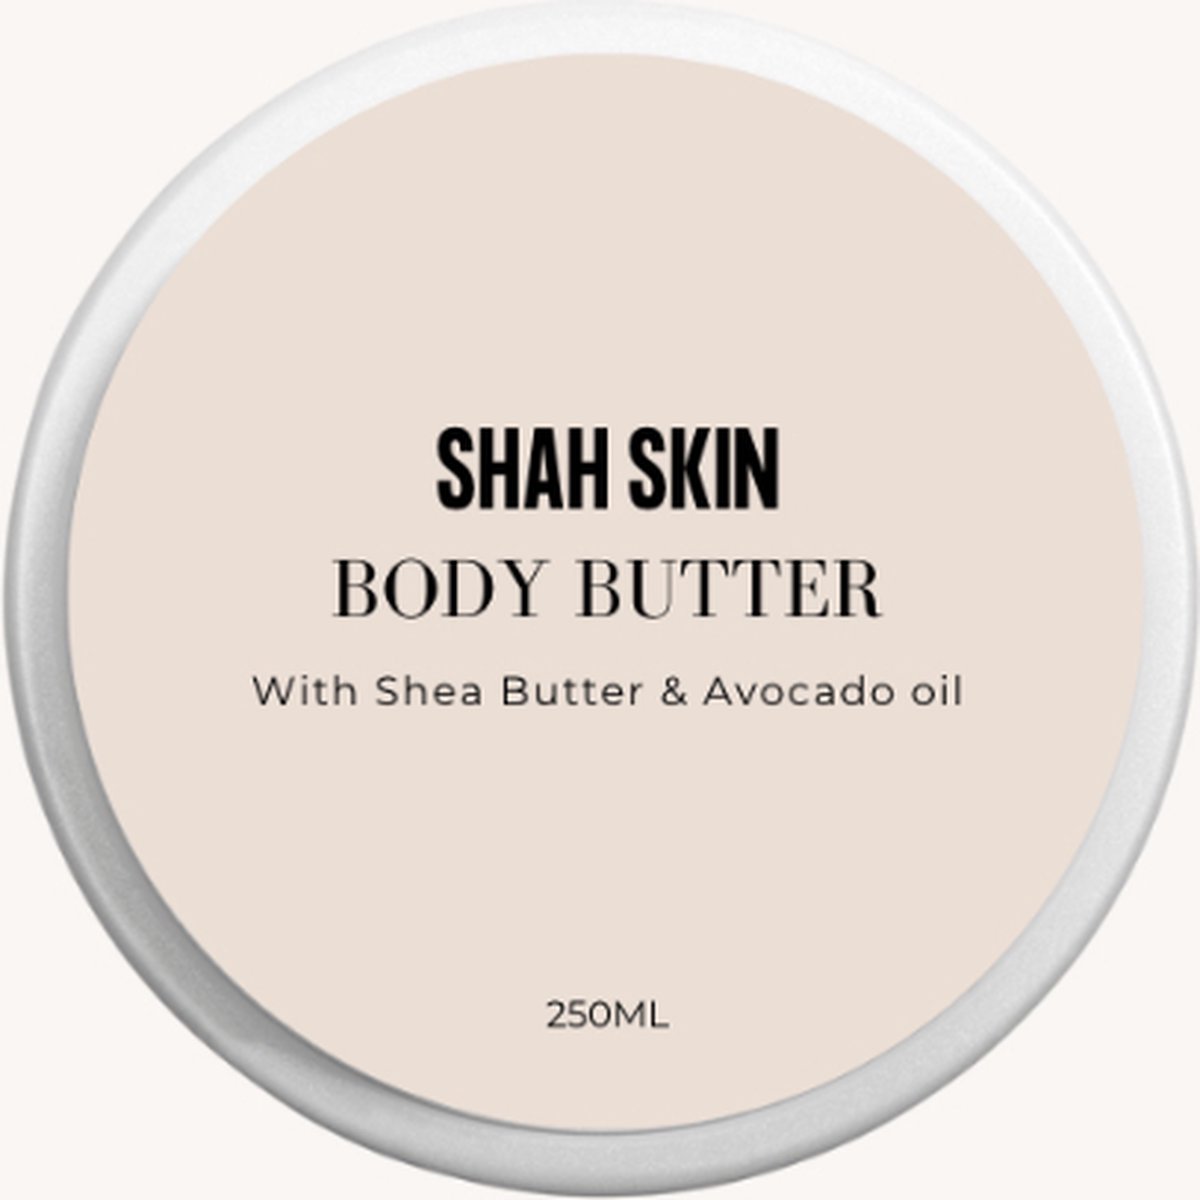 Shah Skin - Body Butter - Voor droge huid - 100% natuurlijk